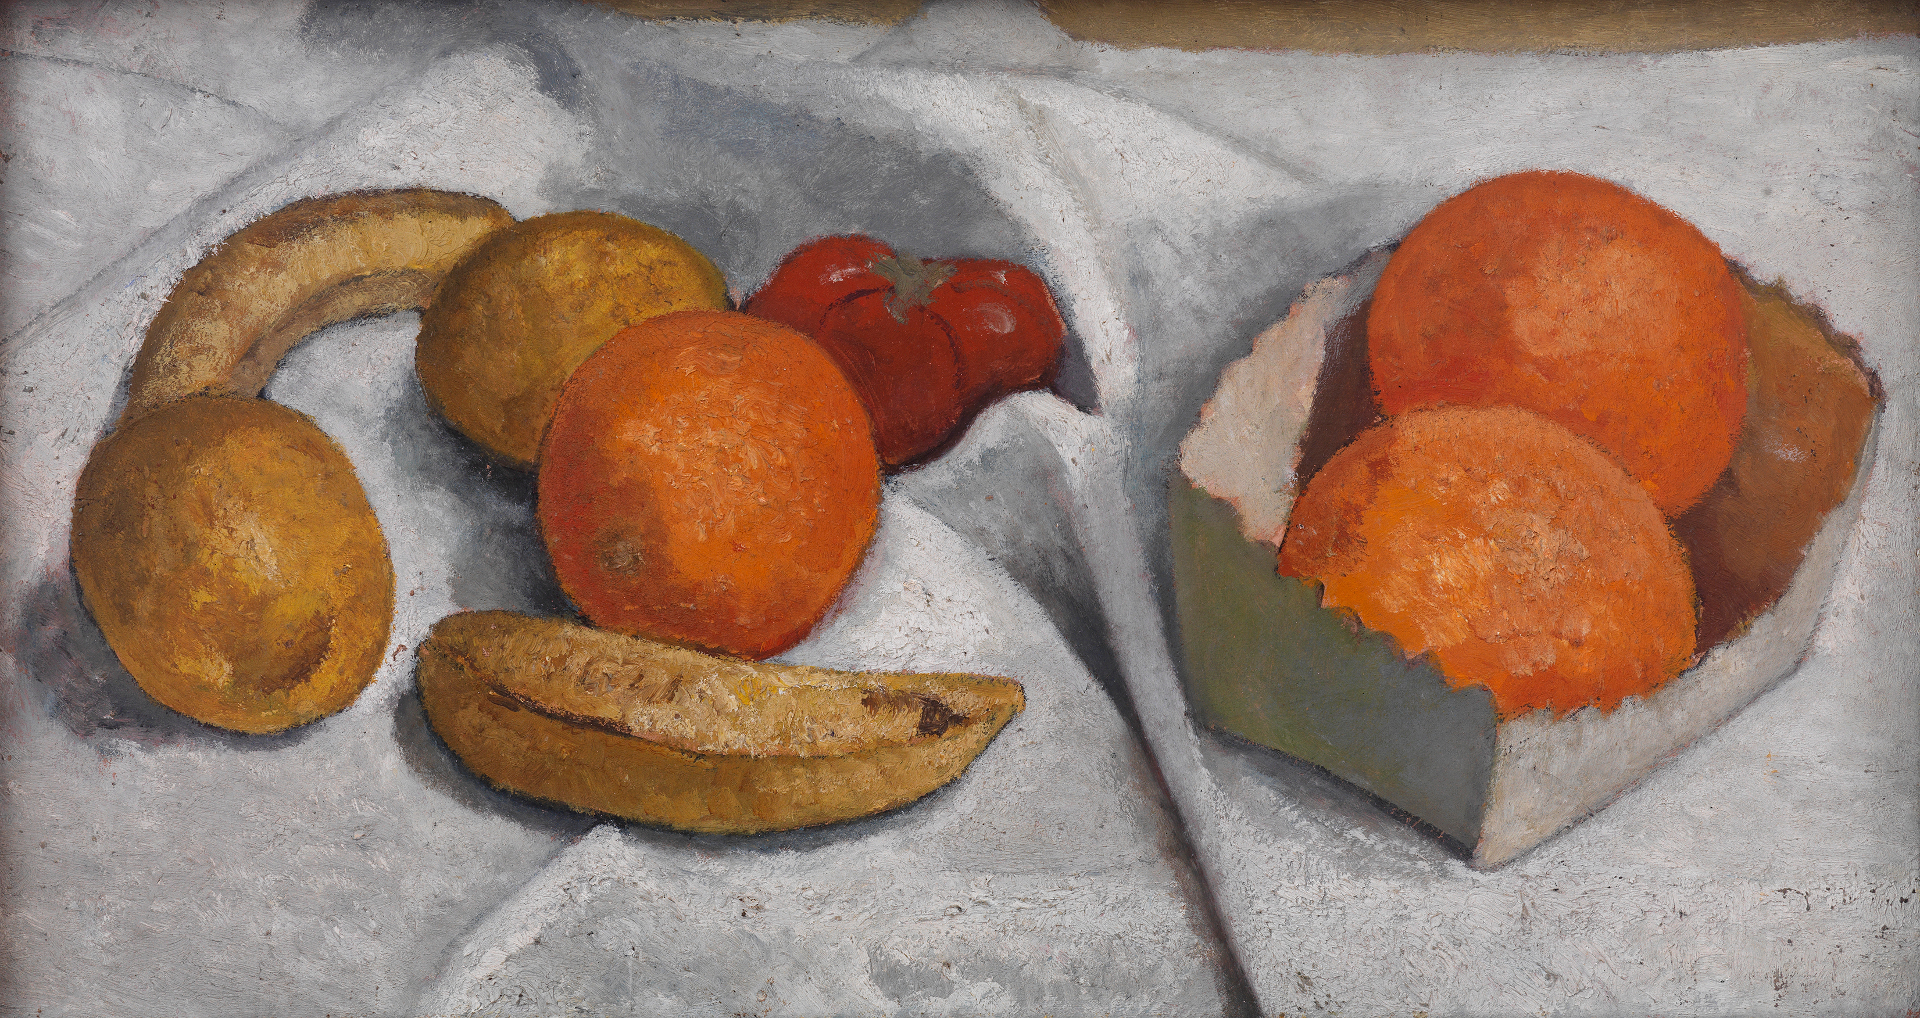 Abbildung von Paula Modersohn-Beckers Obst- und Gemüsestillleben. Zu sehen sind Bananen, Organgen, Zitronen und eine Tomate auf einem weißen Tuch.